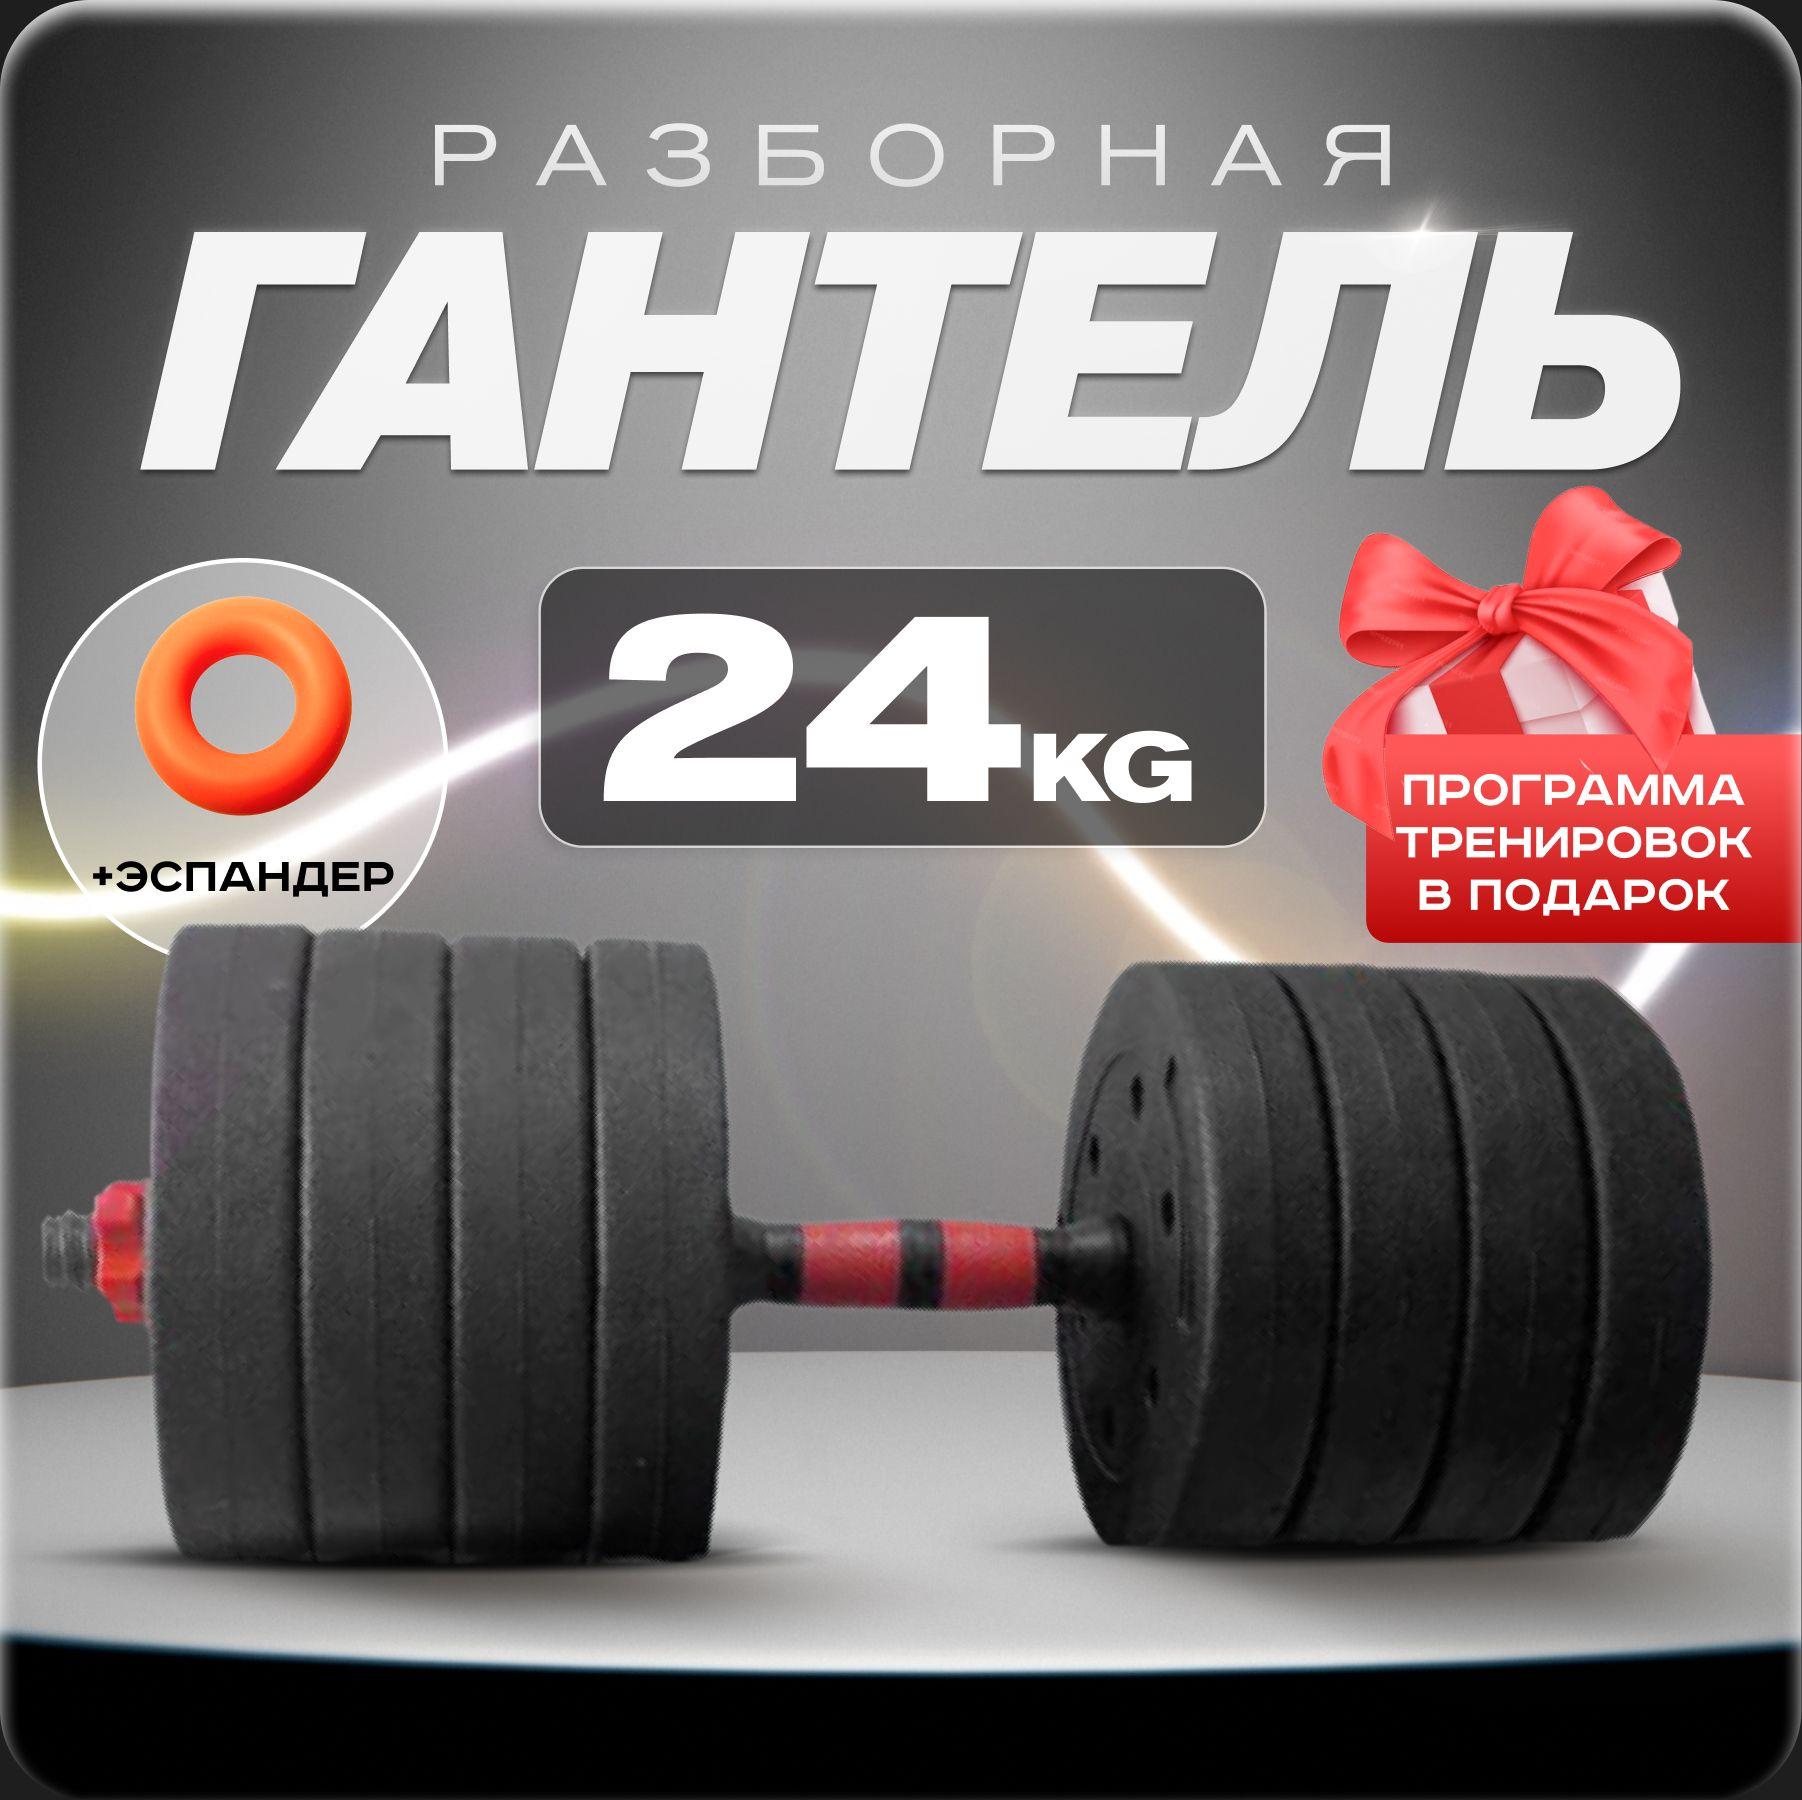 Ахиллес | Гантель разборная 24 кг для фитнеса 1 шт. Гантели - трансформер, черный, красный цвет, для тренировок